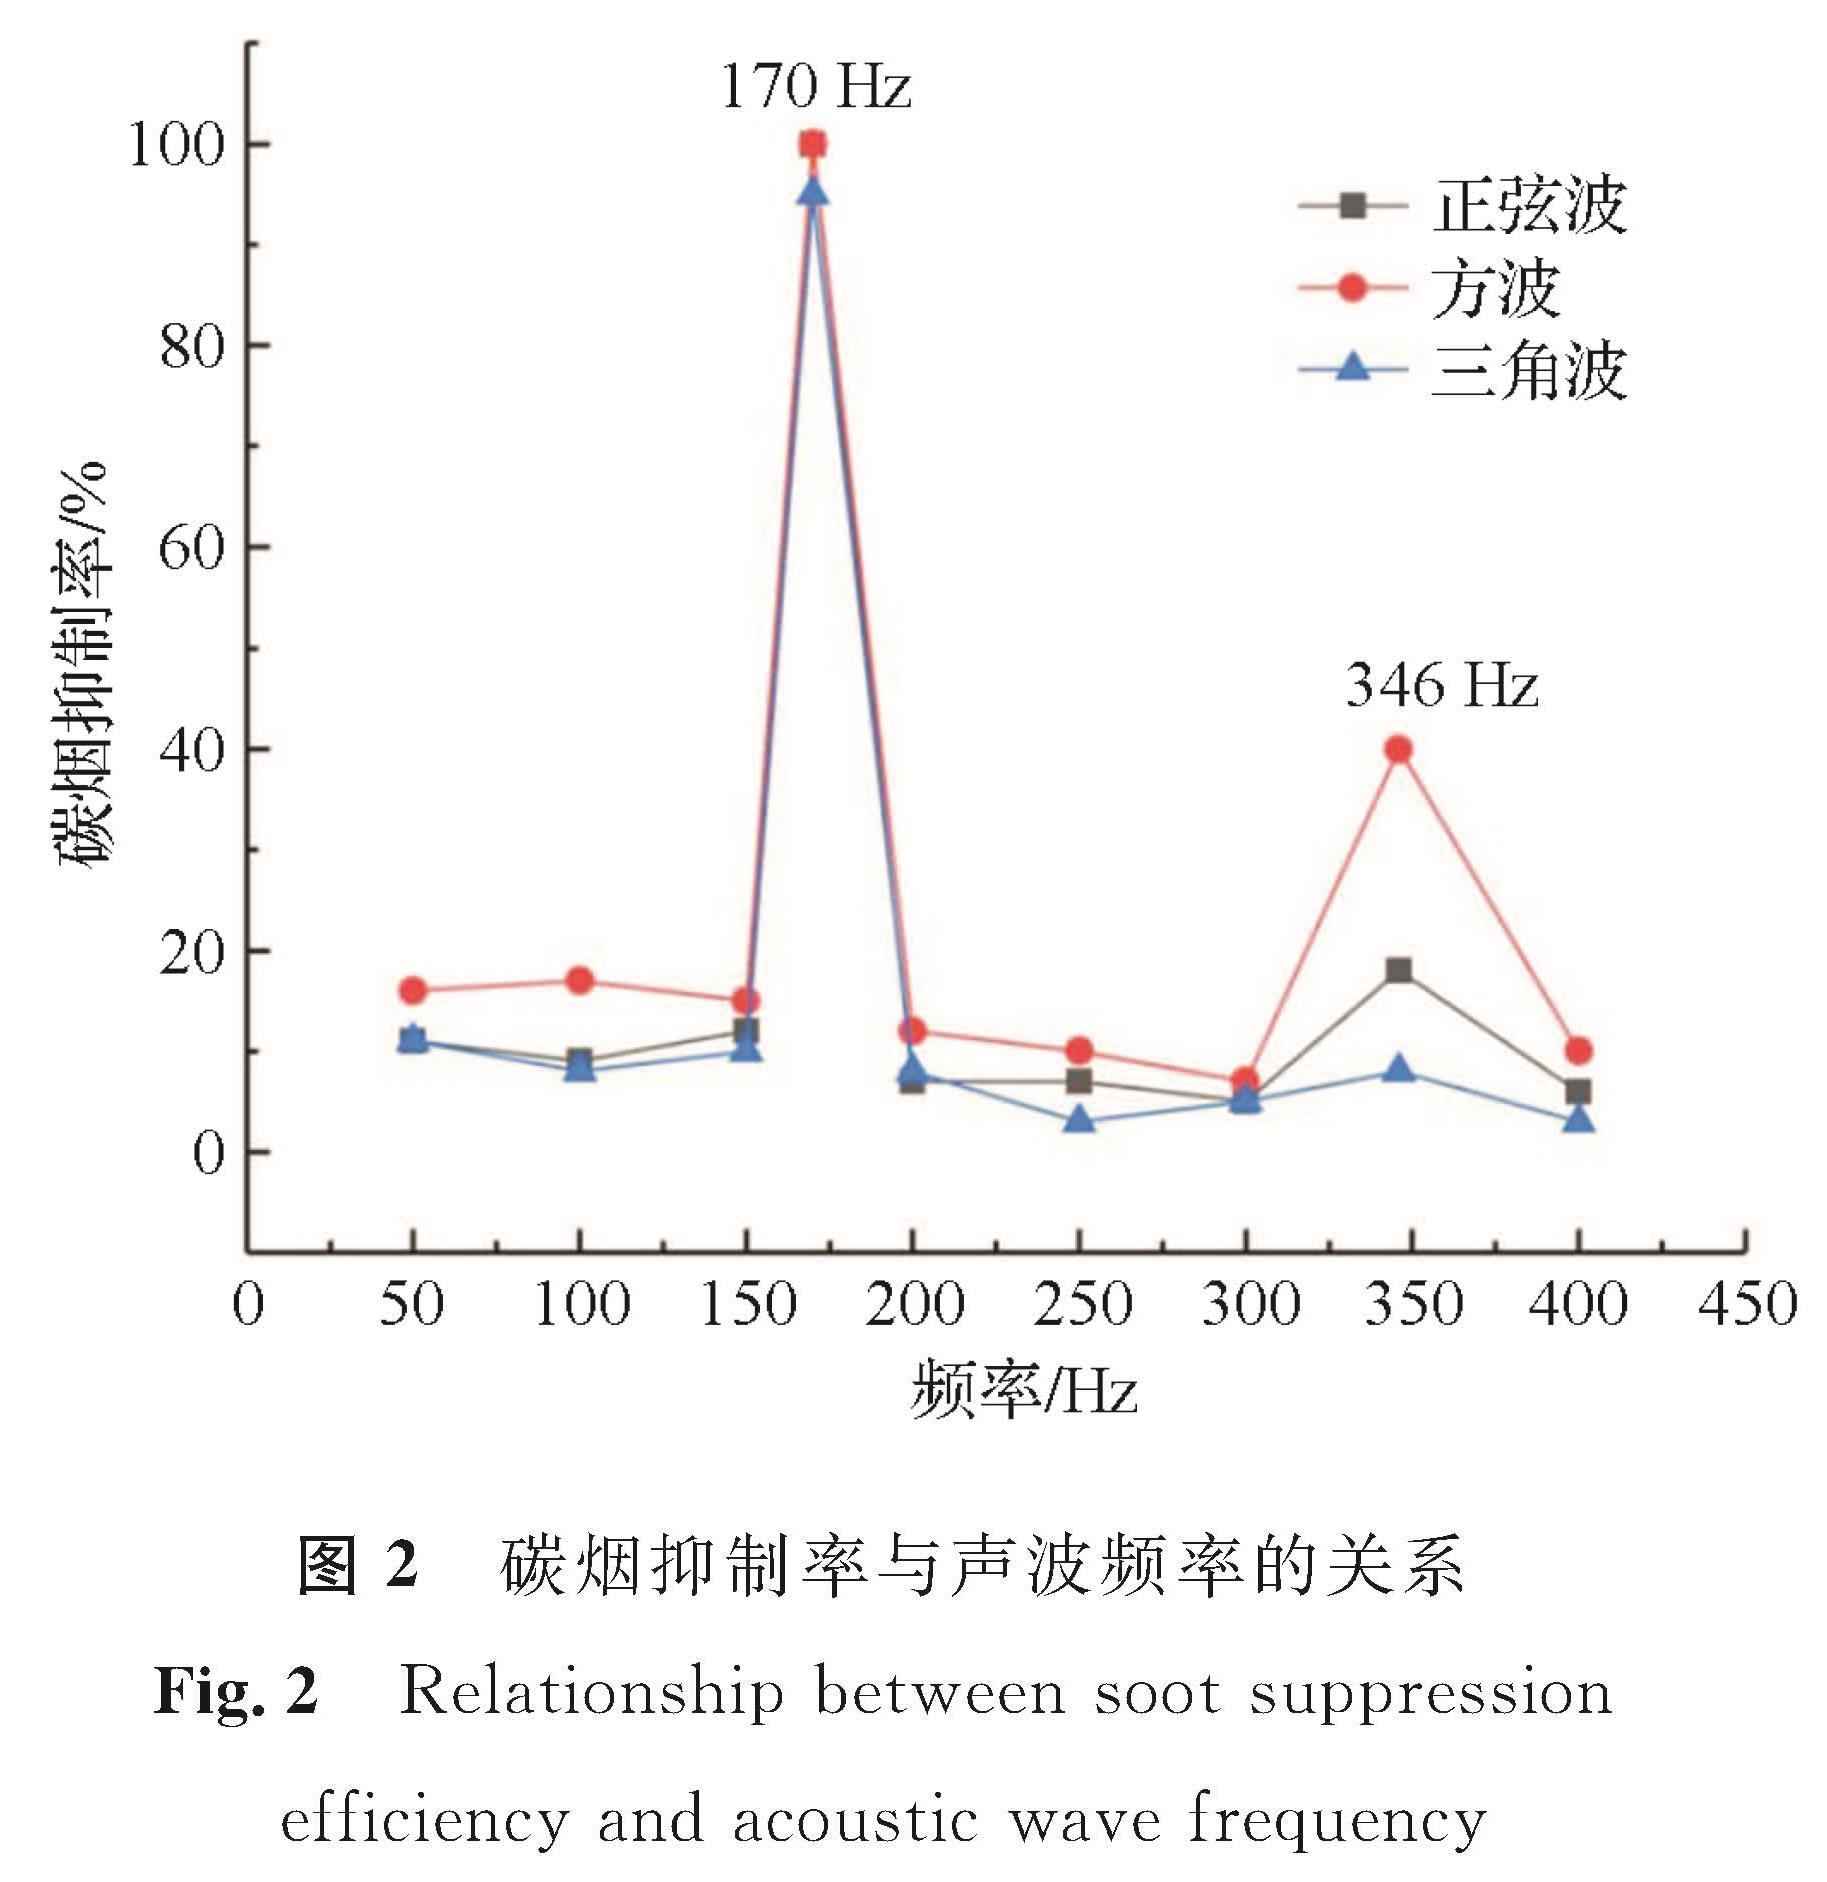 图2 碳烟抑制率与声波频率的关系<br/>Fig.2 Relationship between soot suppression efficiency and acoustic wave frequency